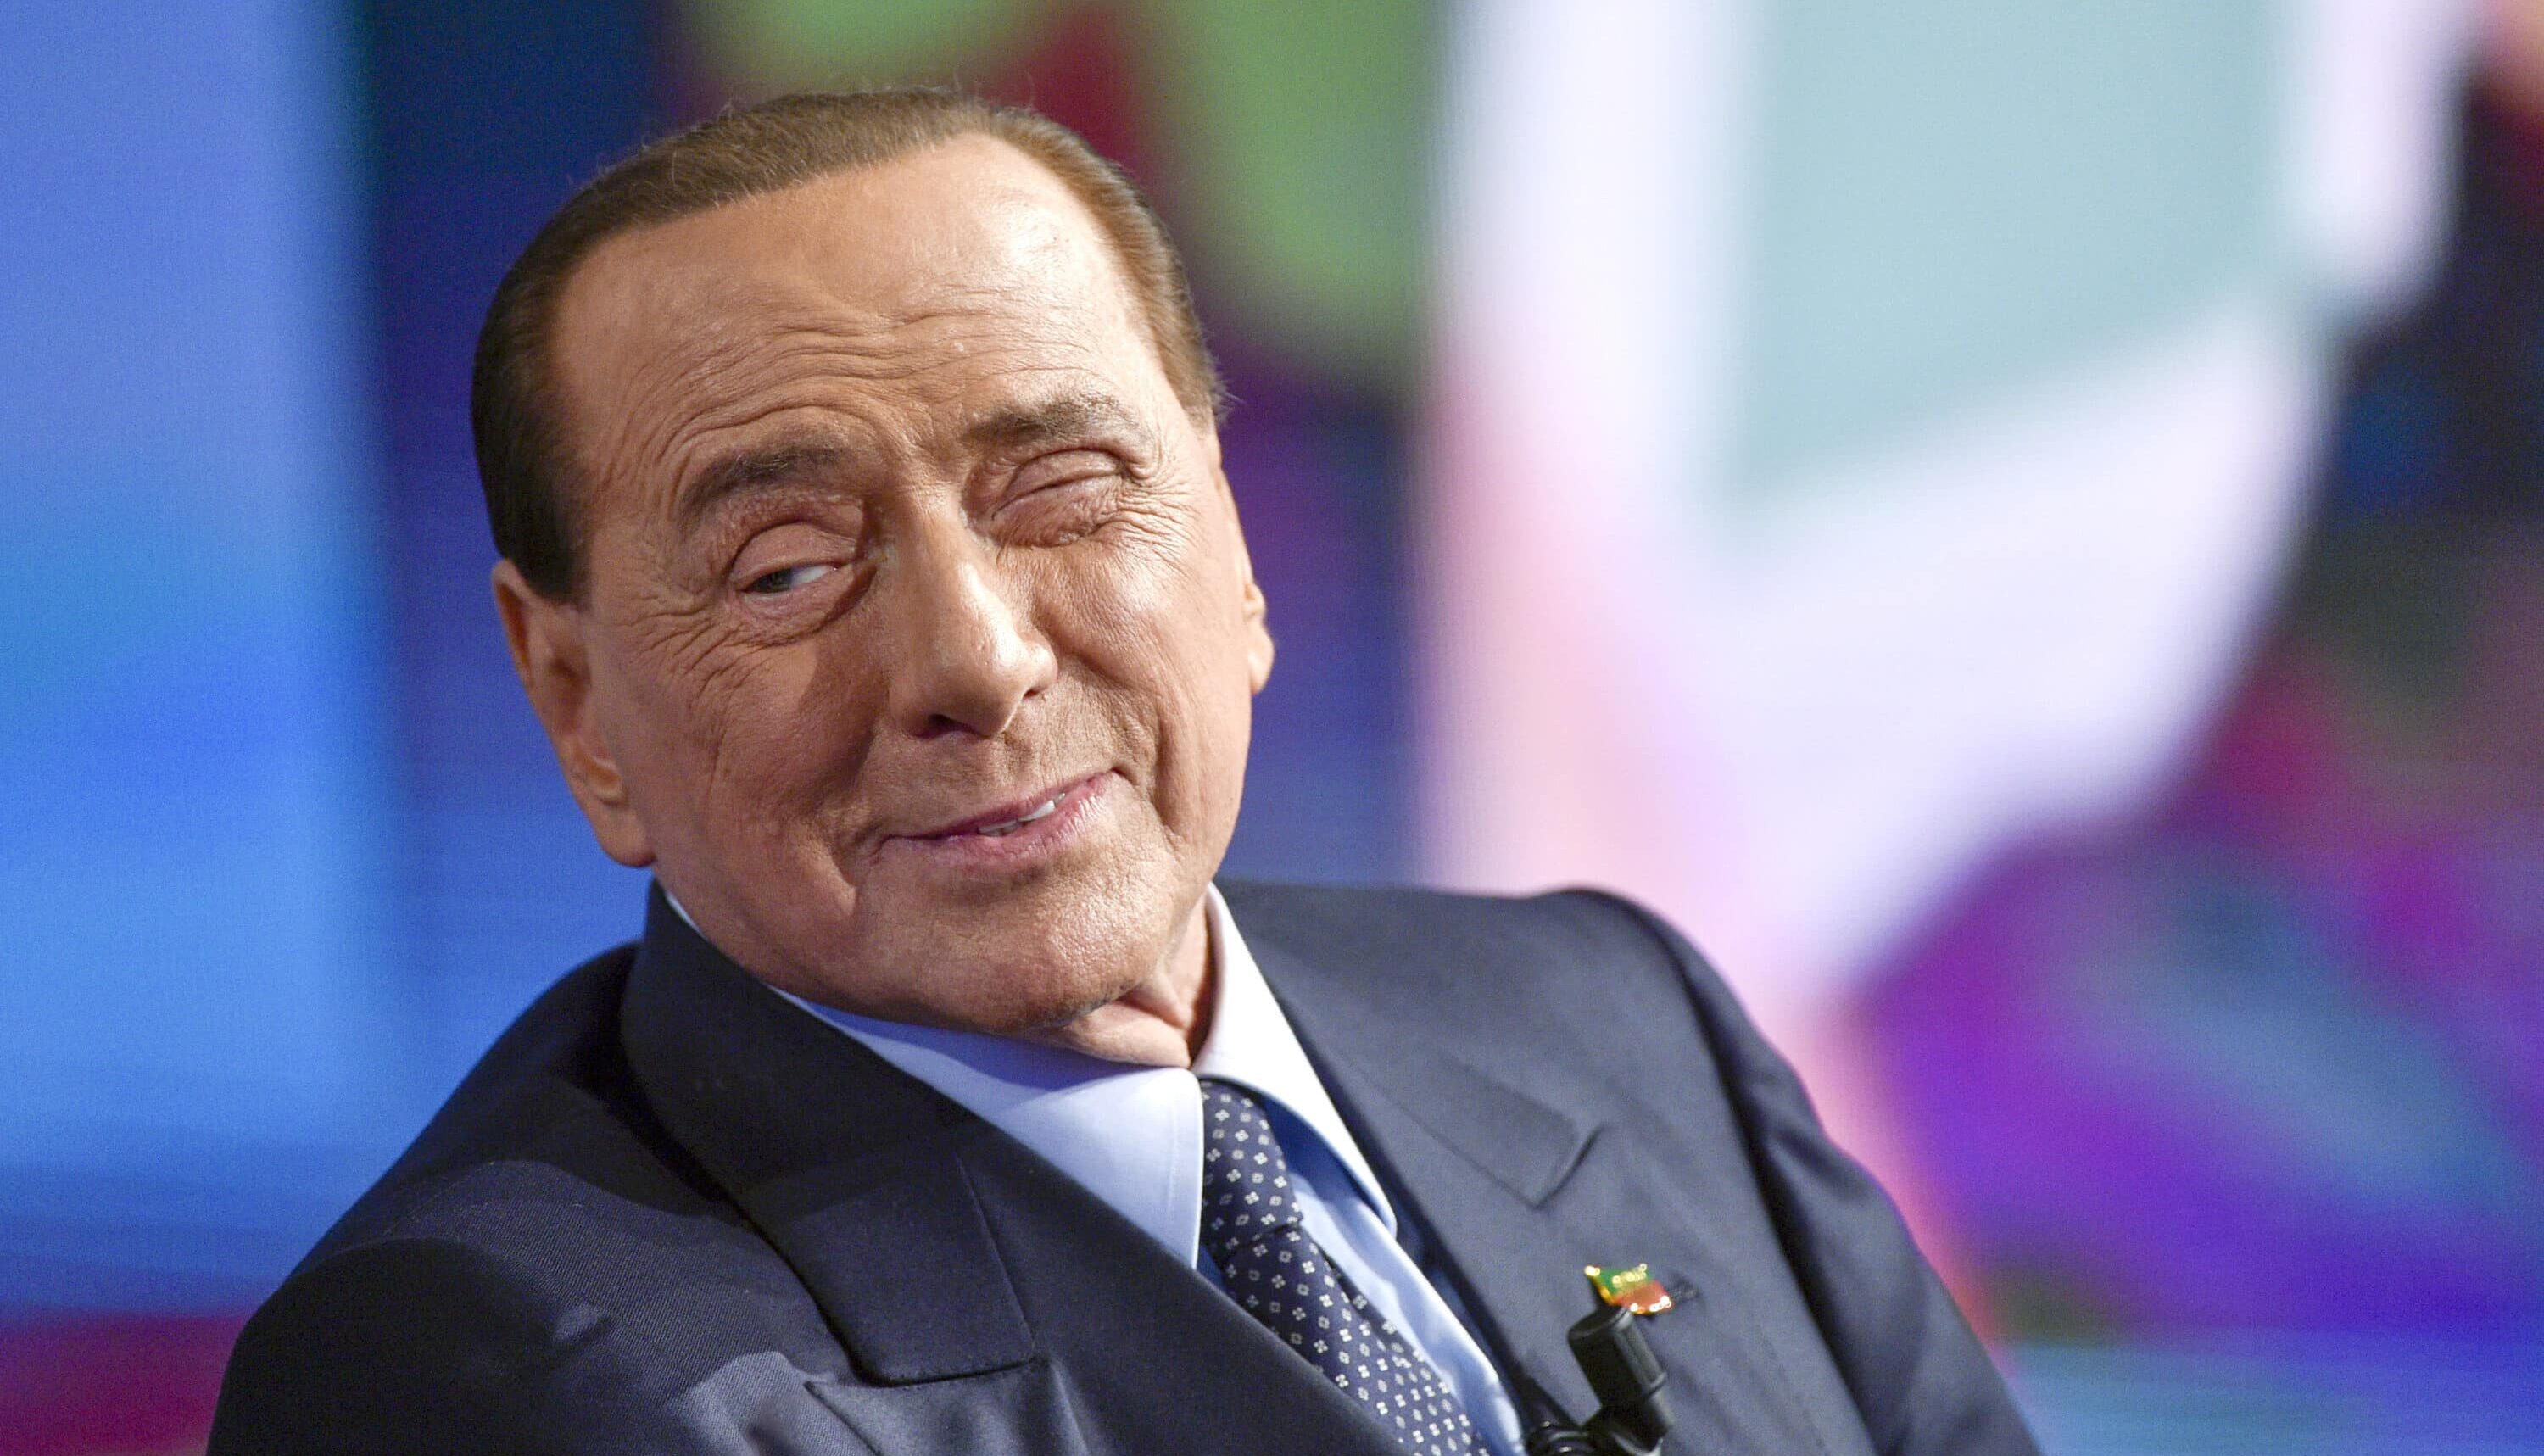 Berlusconi tra politica, imprenditoria e guai giudiziari: chi era e cosa ha fatto davvero l’ex presidente del Consiglio